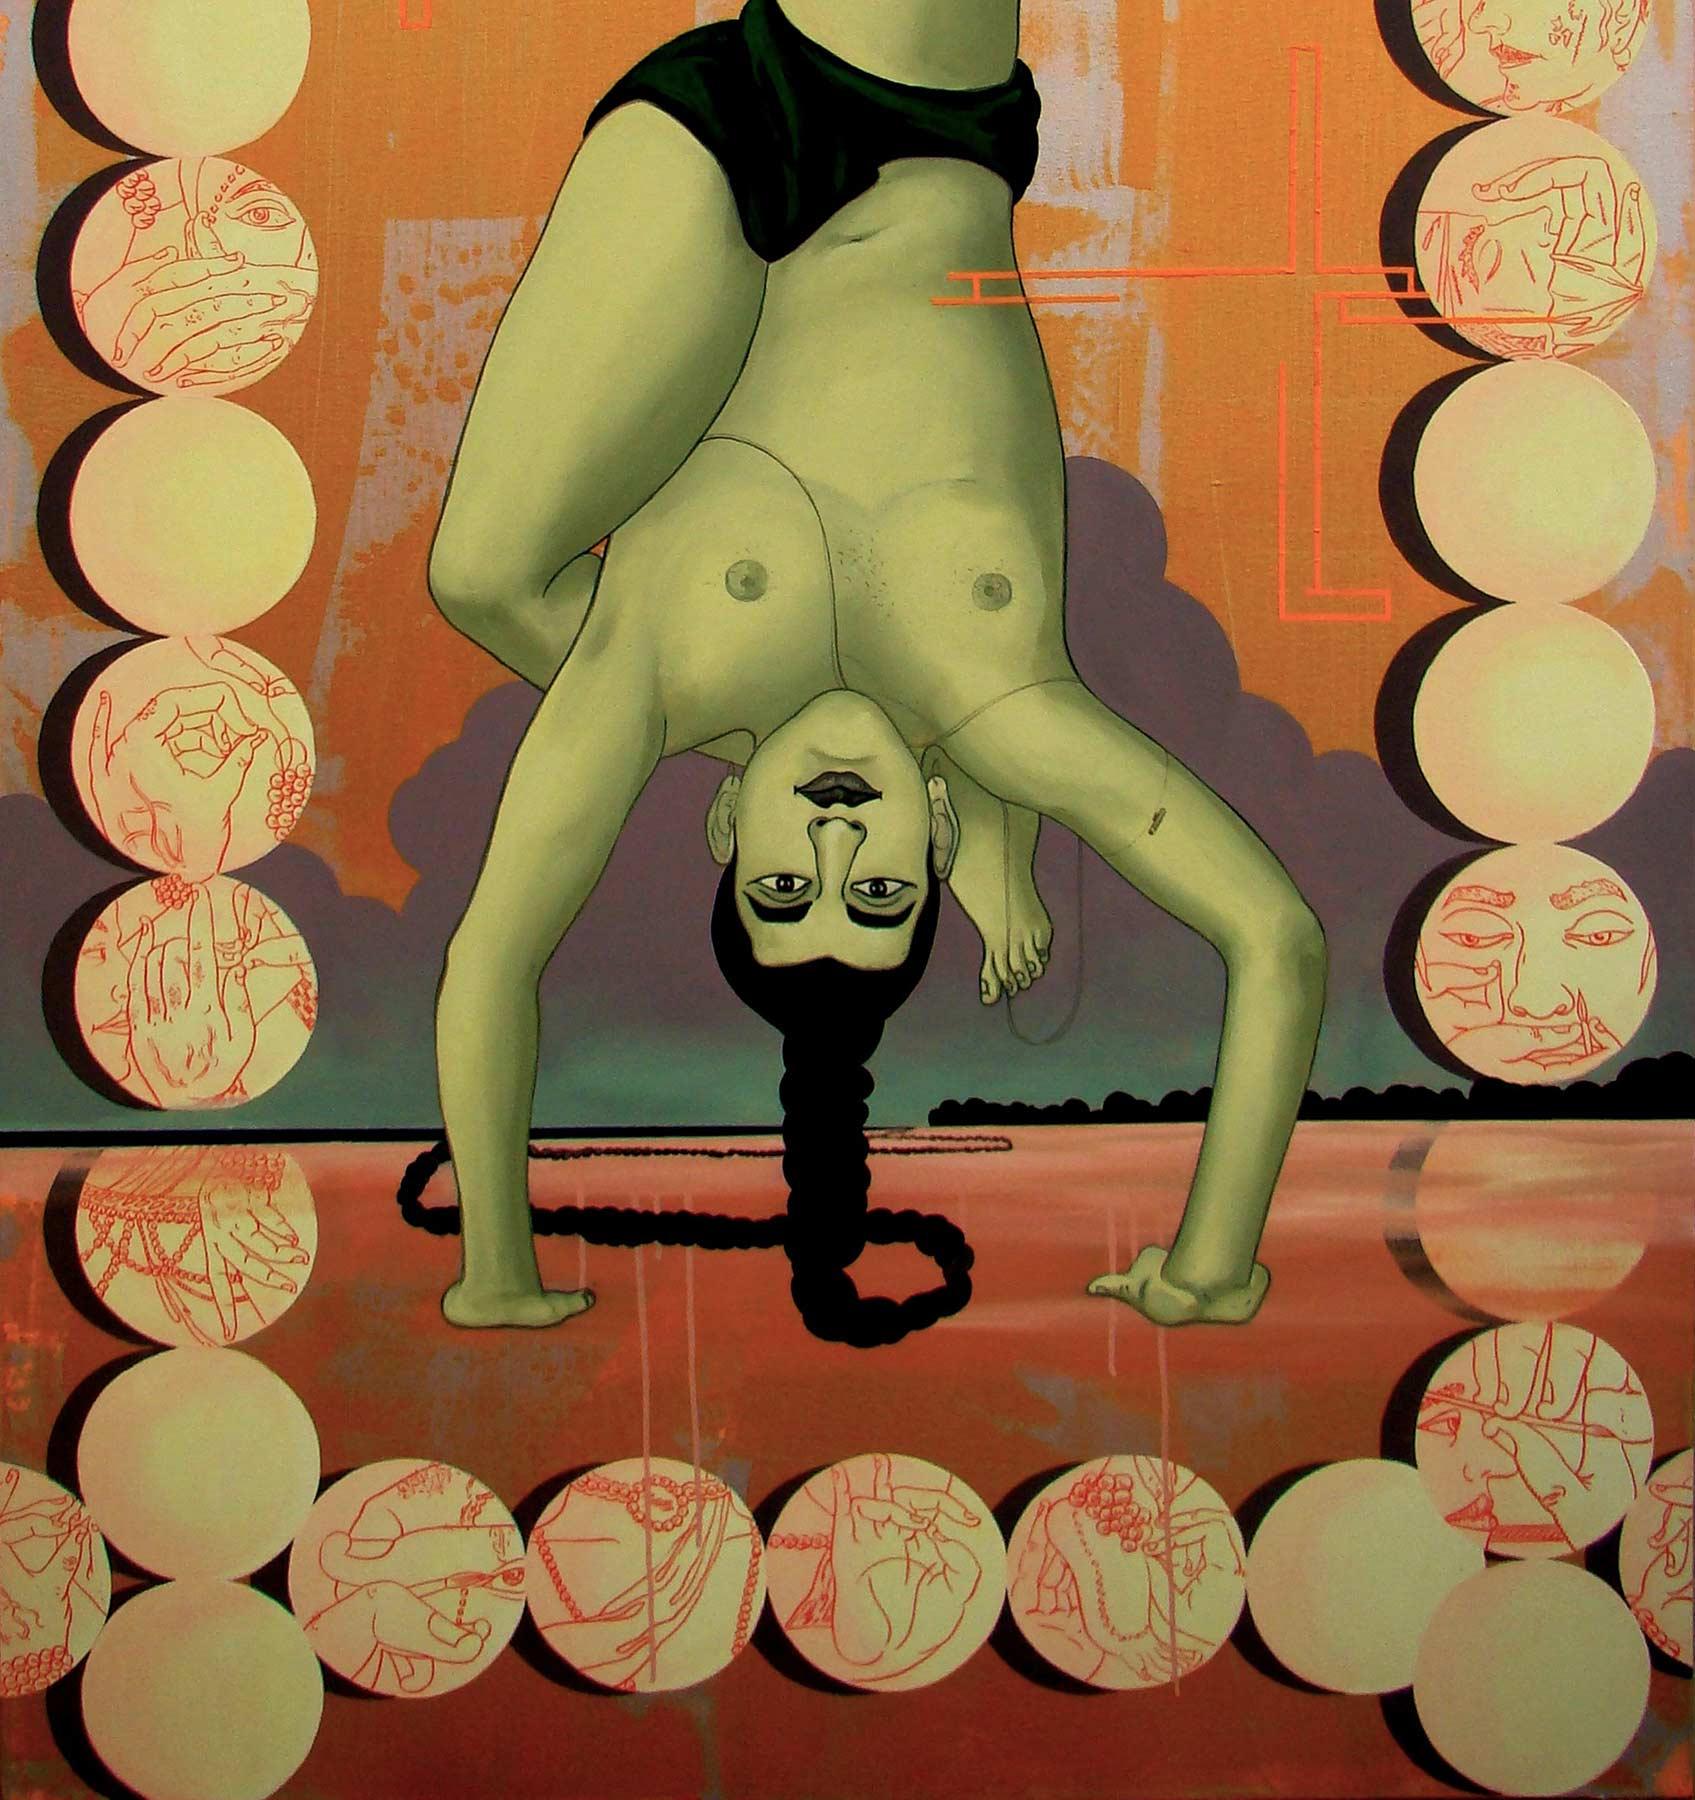 Birendra Pani  - Junge Tänzer mit Mahanadi - 66 x 42 Zoll (ungerahmt)
Acryl auf Leinwand , 2009
** Wird in gerollter Form geliefert.
Sollten Sie das Werk in gebrauchsfertigem Zustand wünschen, kontaktieren Sie bitte die Galerie für eine